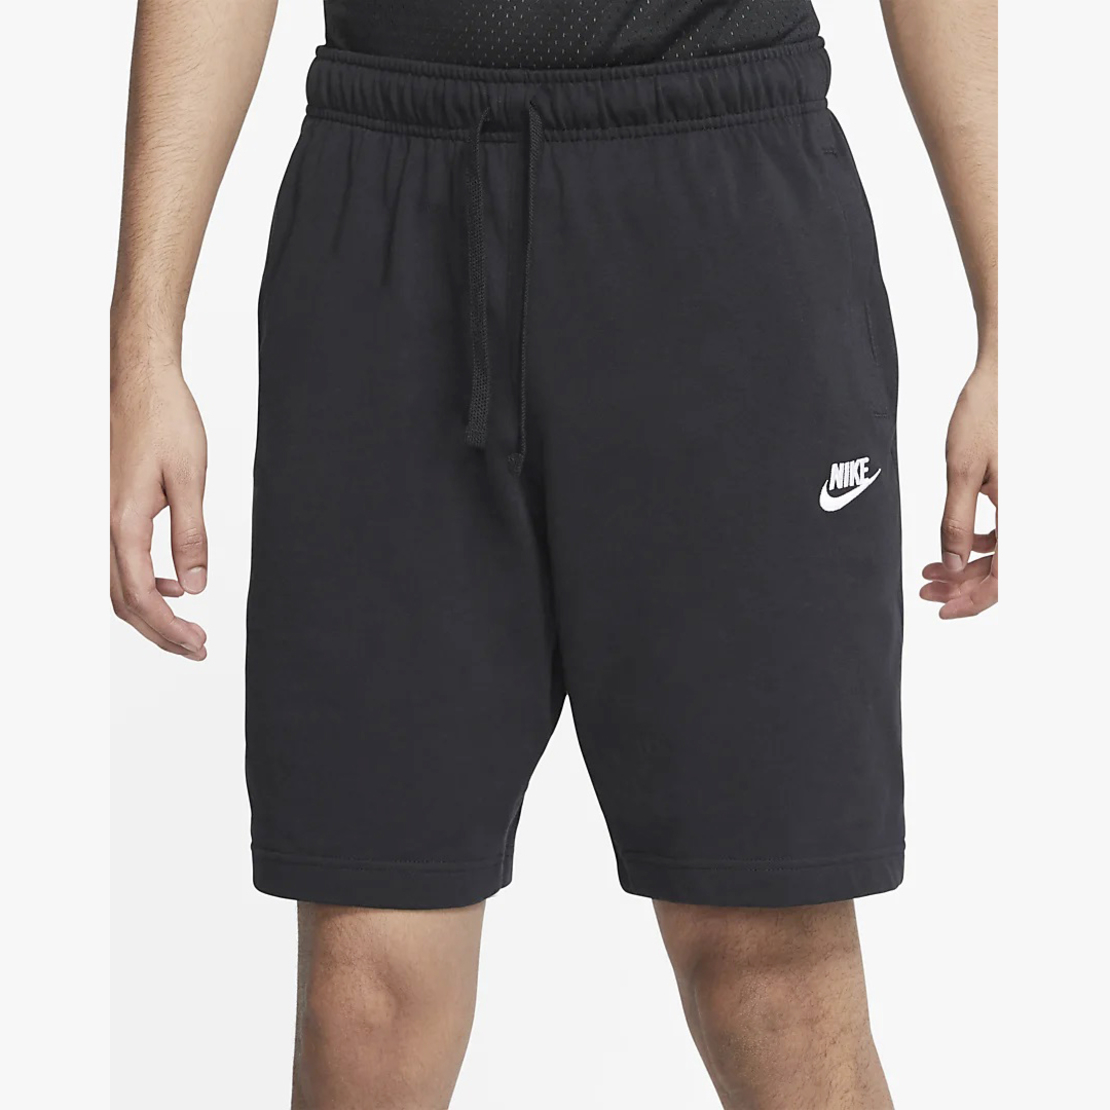 שורט נייק גברים | Nike Stretch Shorts